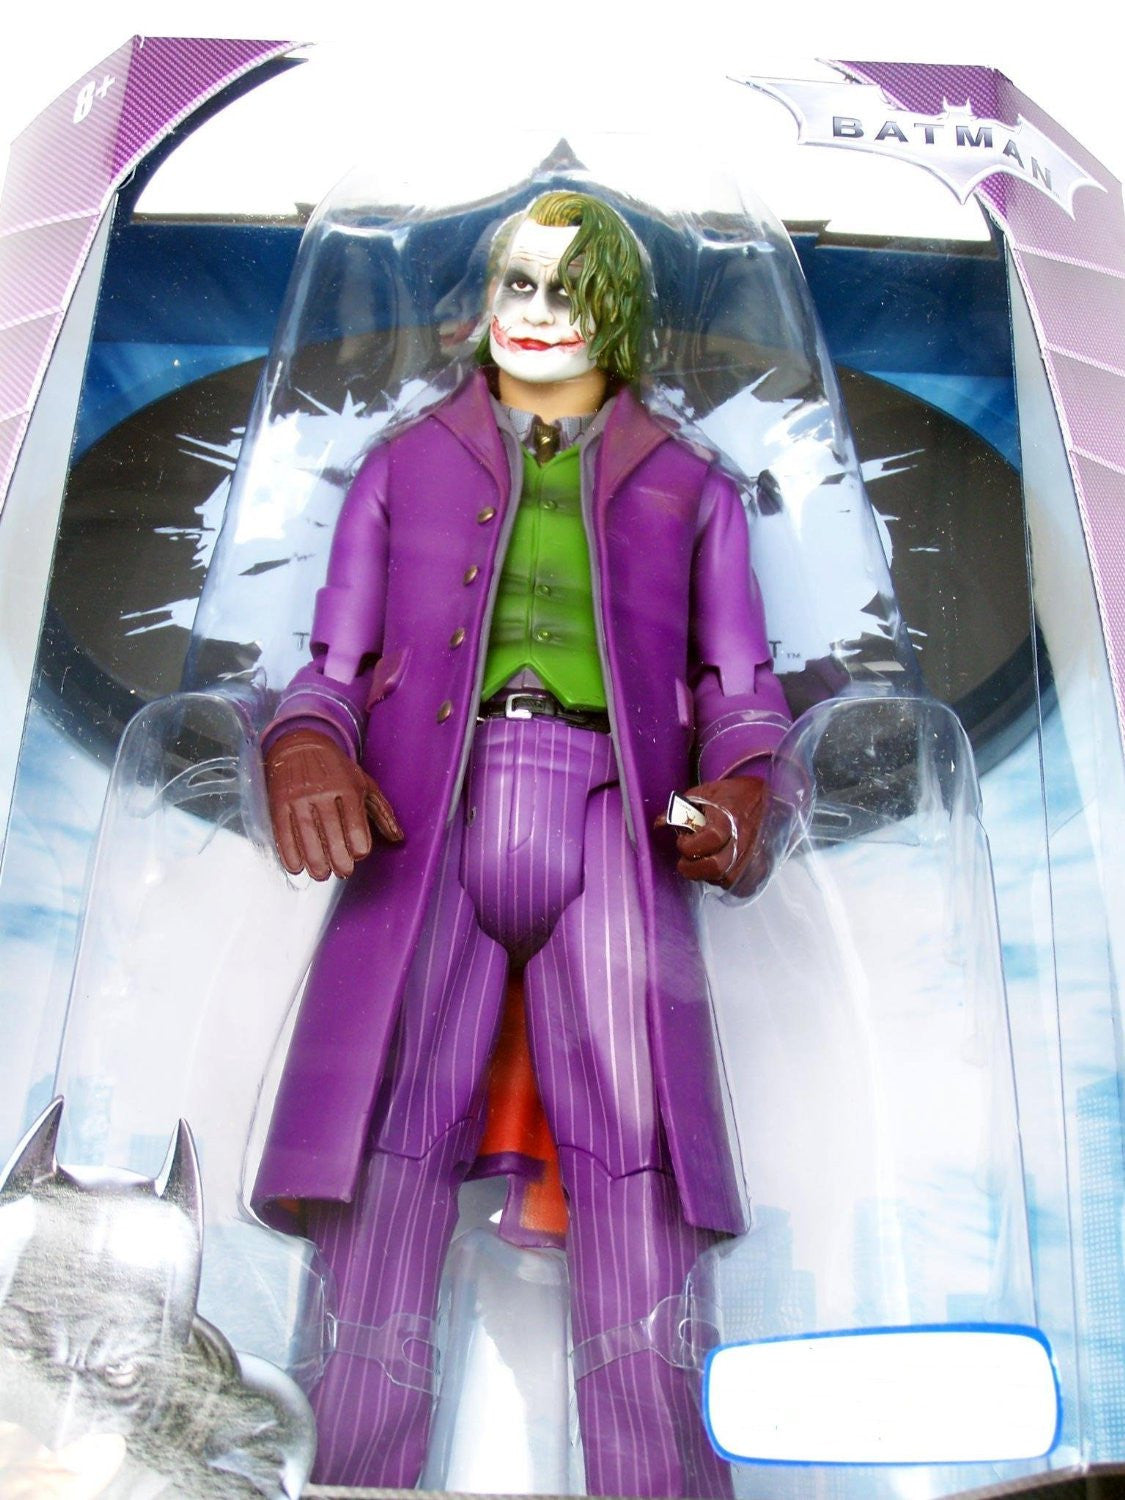 12" Dark Knight Joker Exclusive Action Figure by Mattel